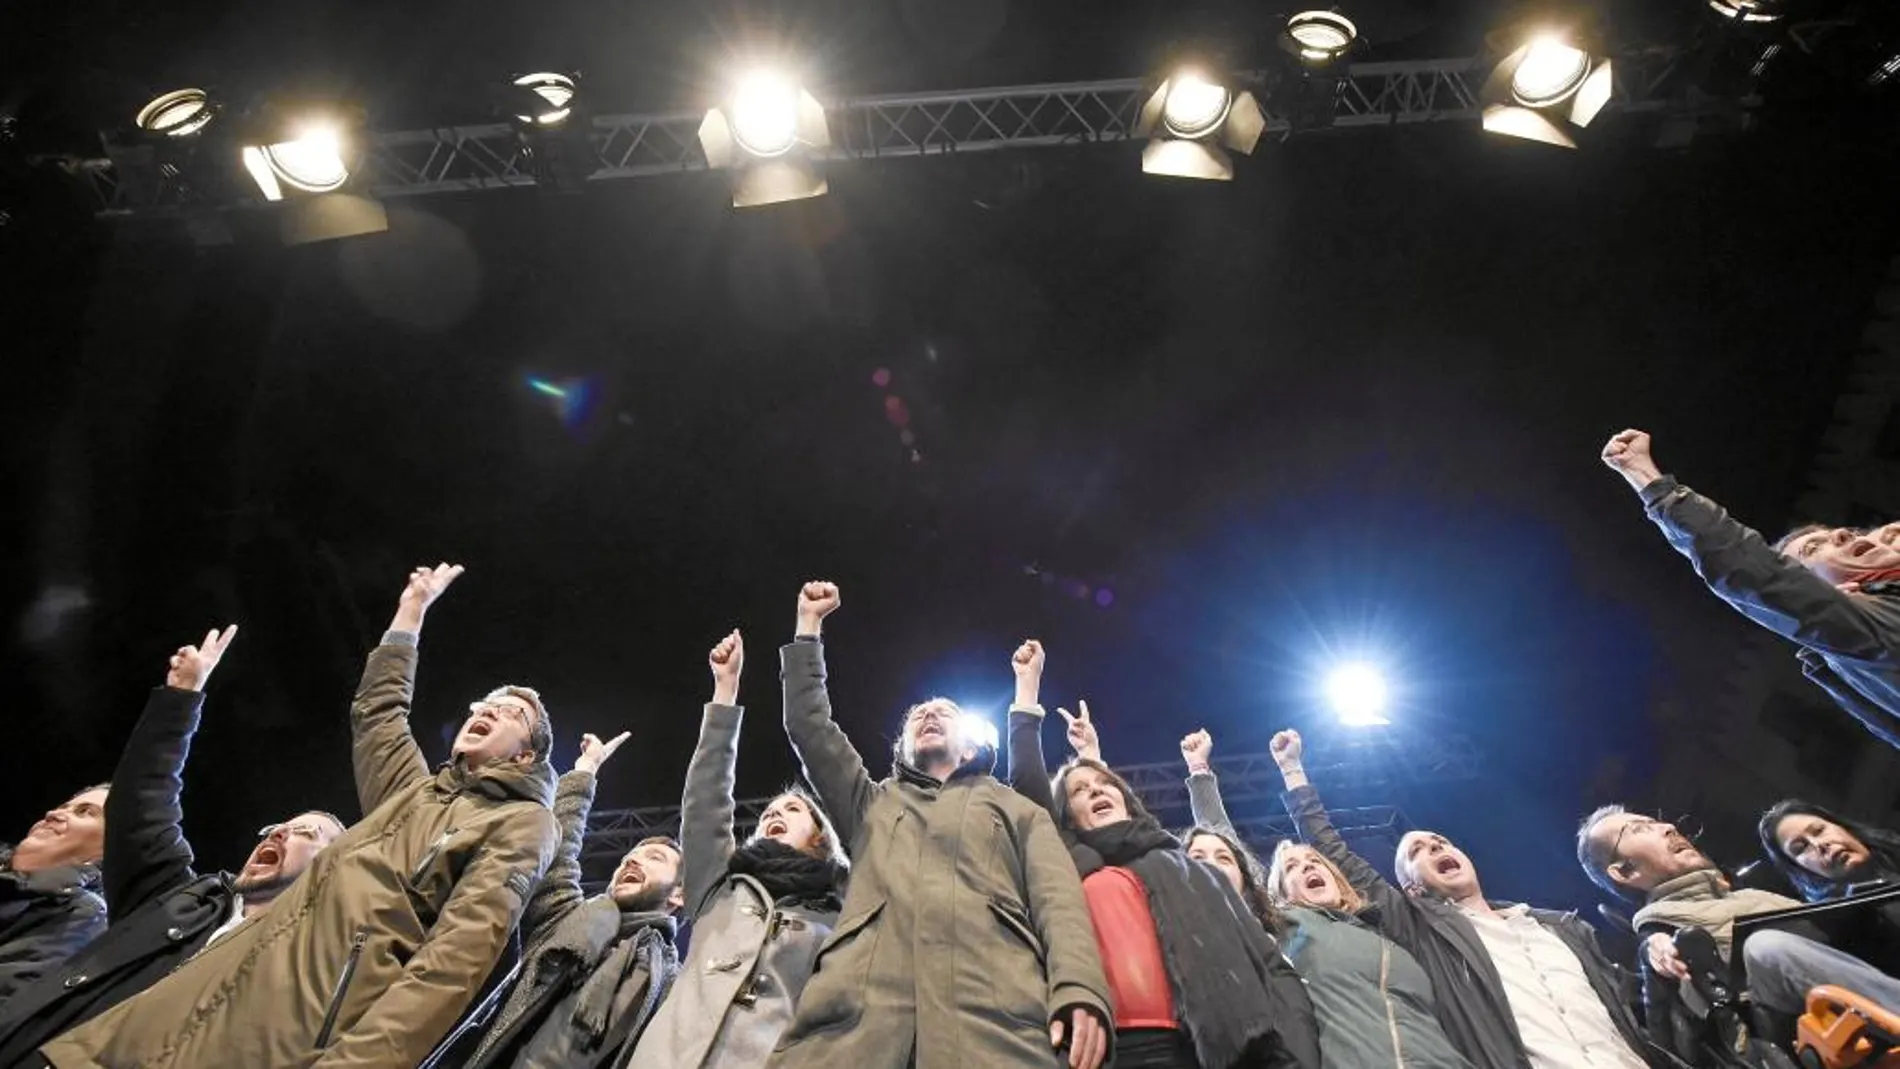 La plana mayor de Podemos, con Iglesias puño en alto en el centro, celebró así los resultados de las generales la noche del 20 de diciembre